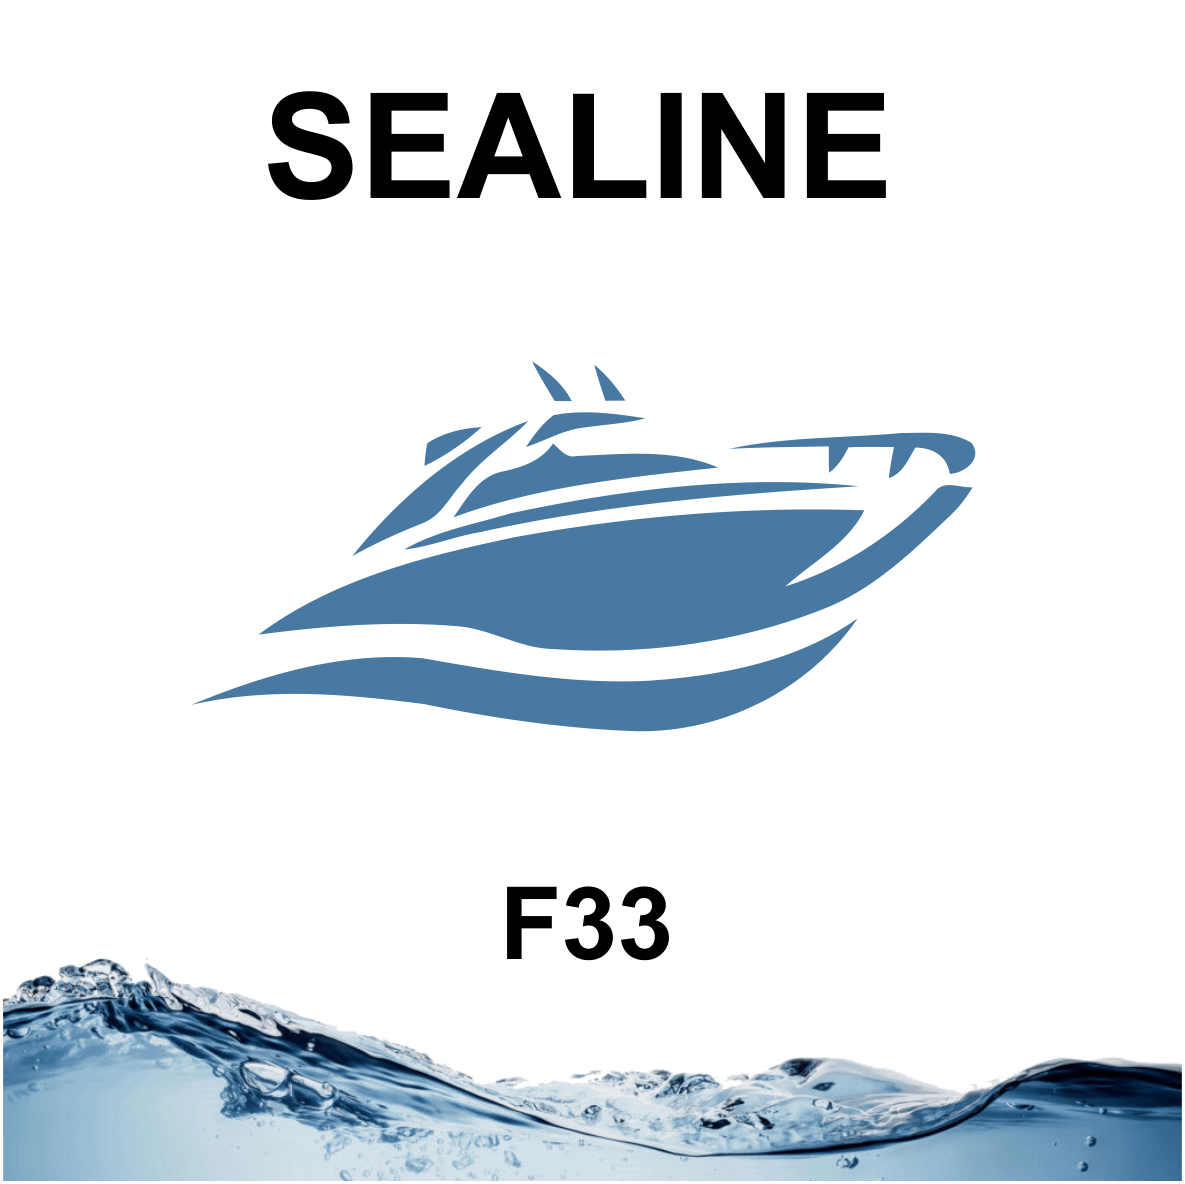 Sealine F33